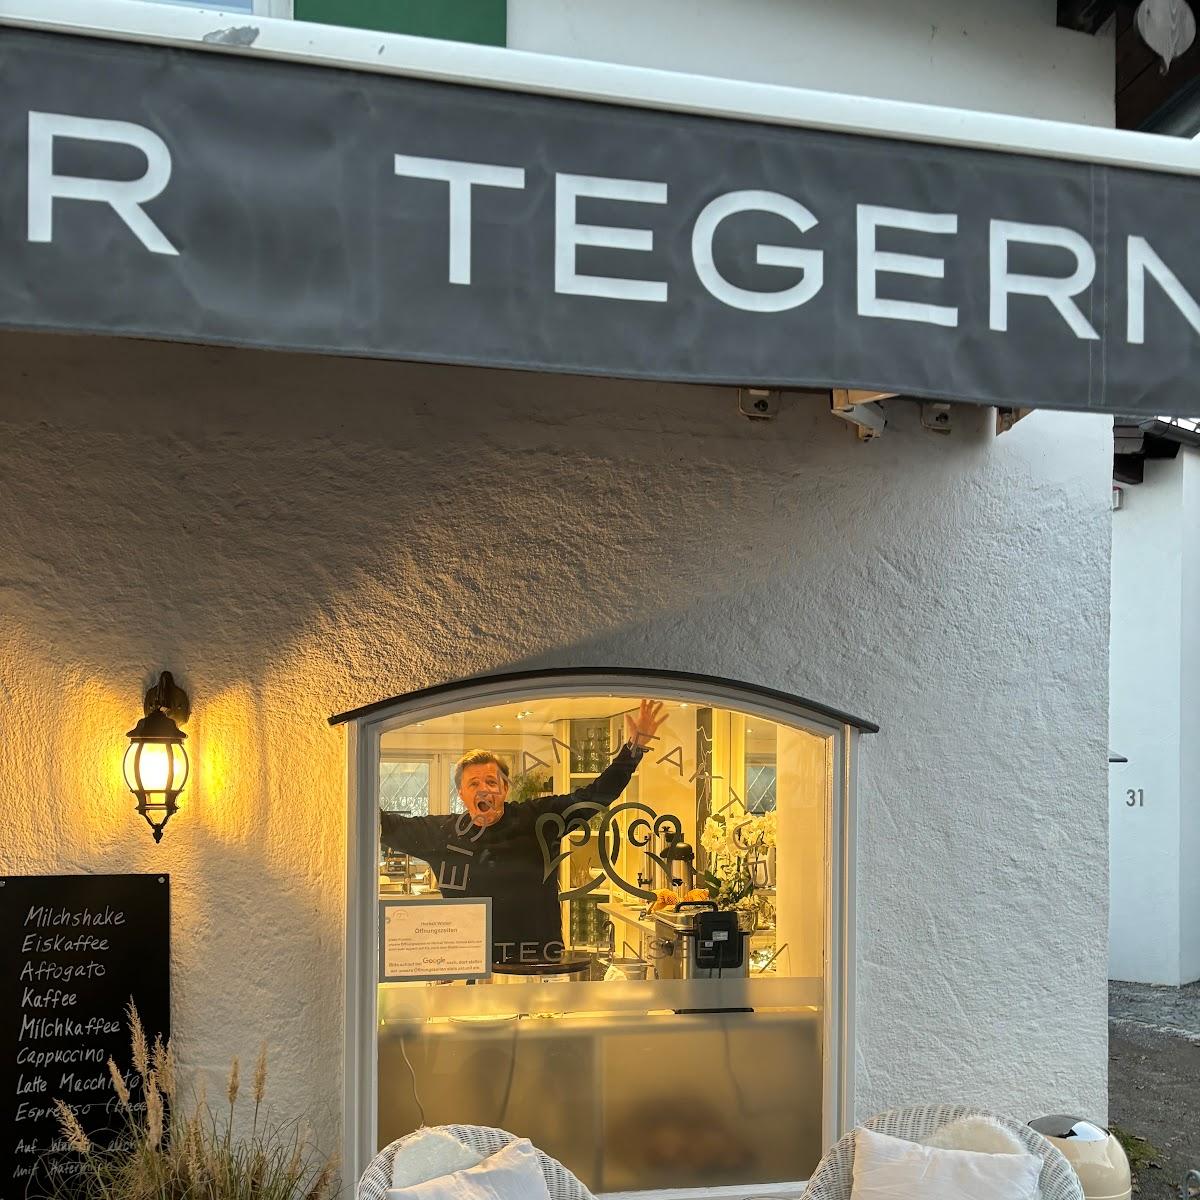 Restaurant "Eisautomat Eismanufaktur" in Tegernsee